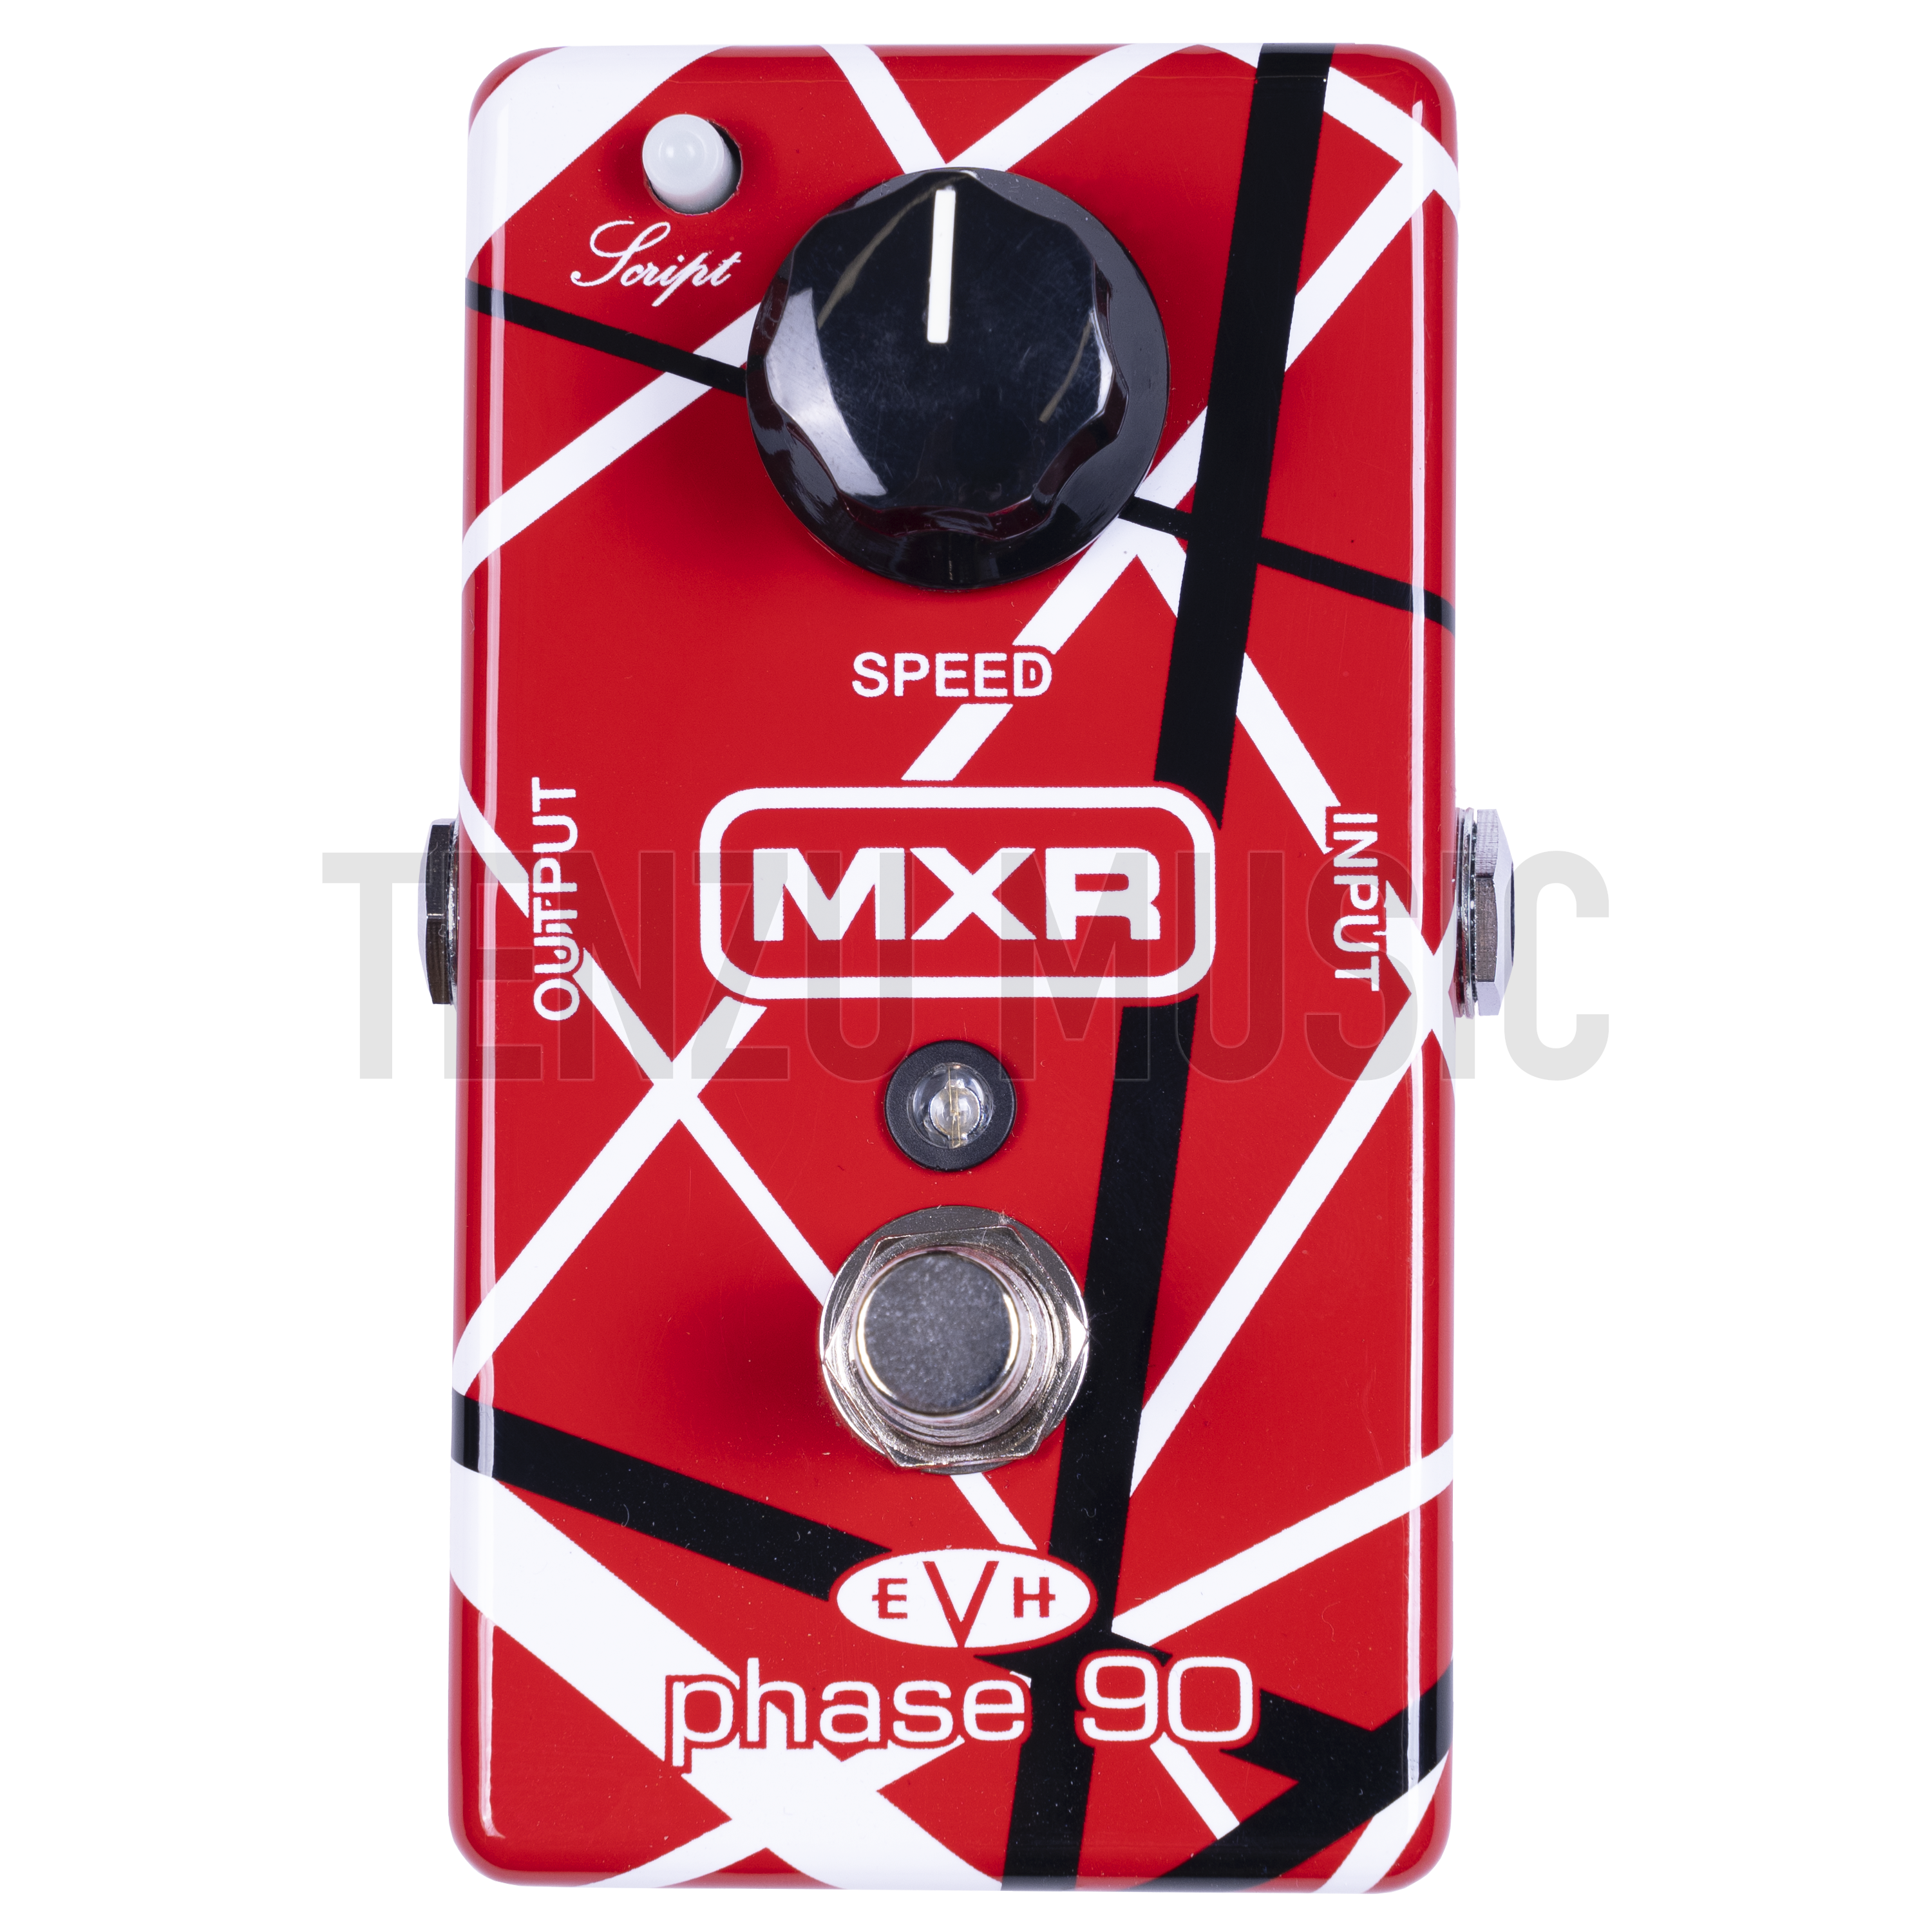 MXR ’74 Vintage Phase 90